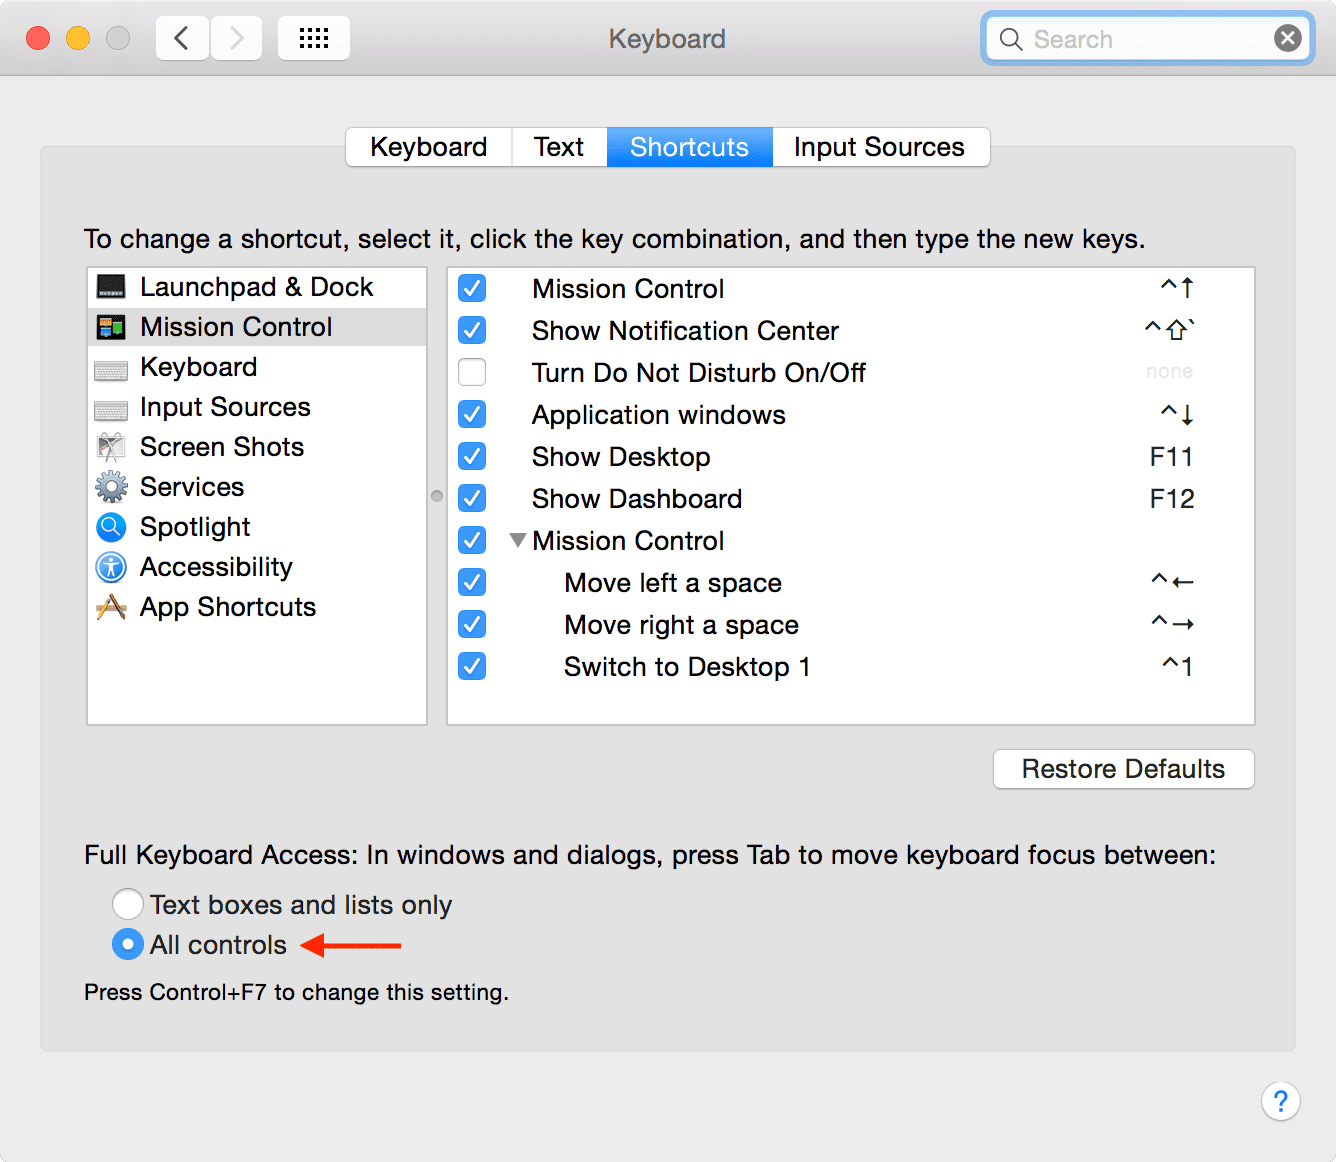 Impostazioni di accesso completo alla tastiera macOS Mojave